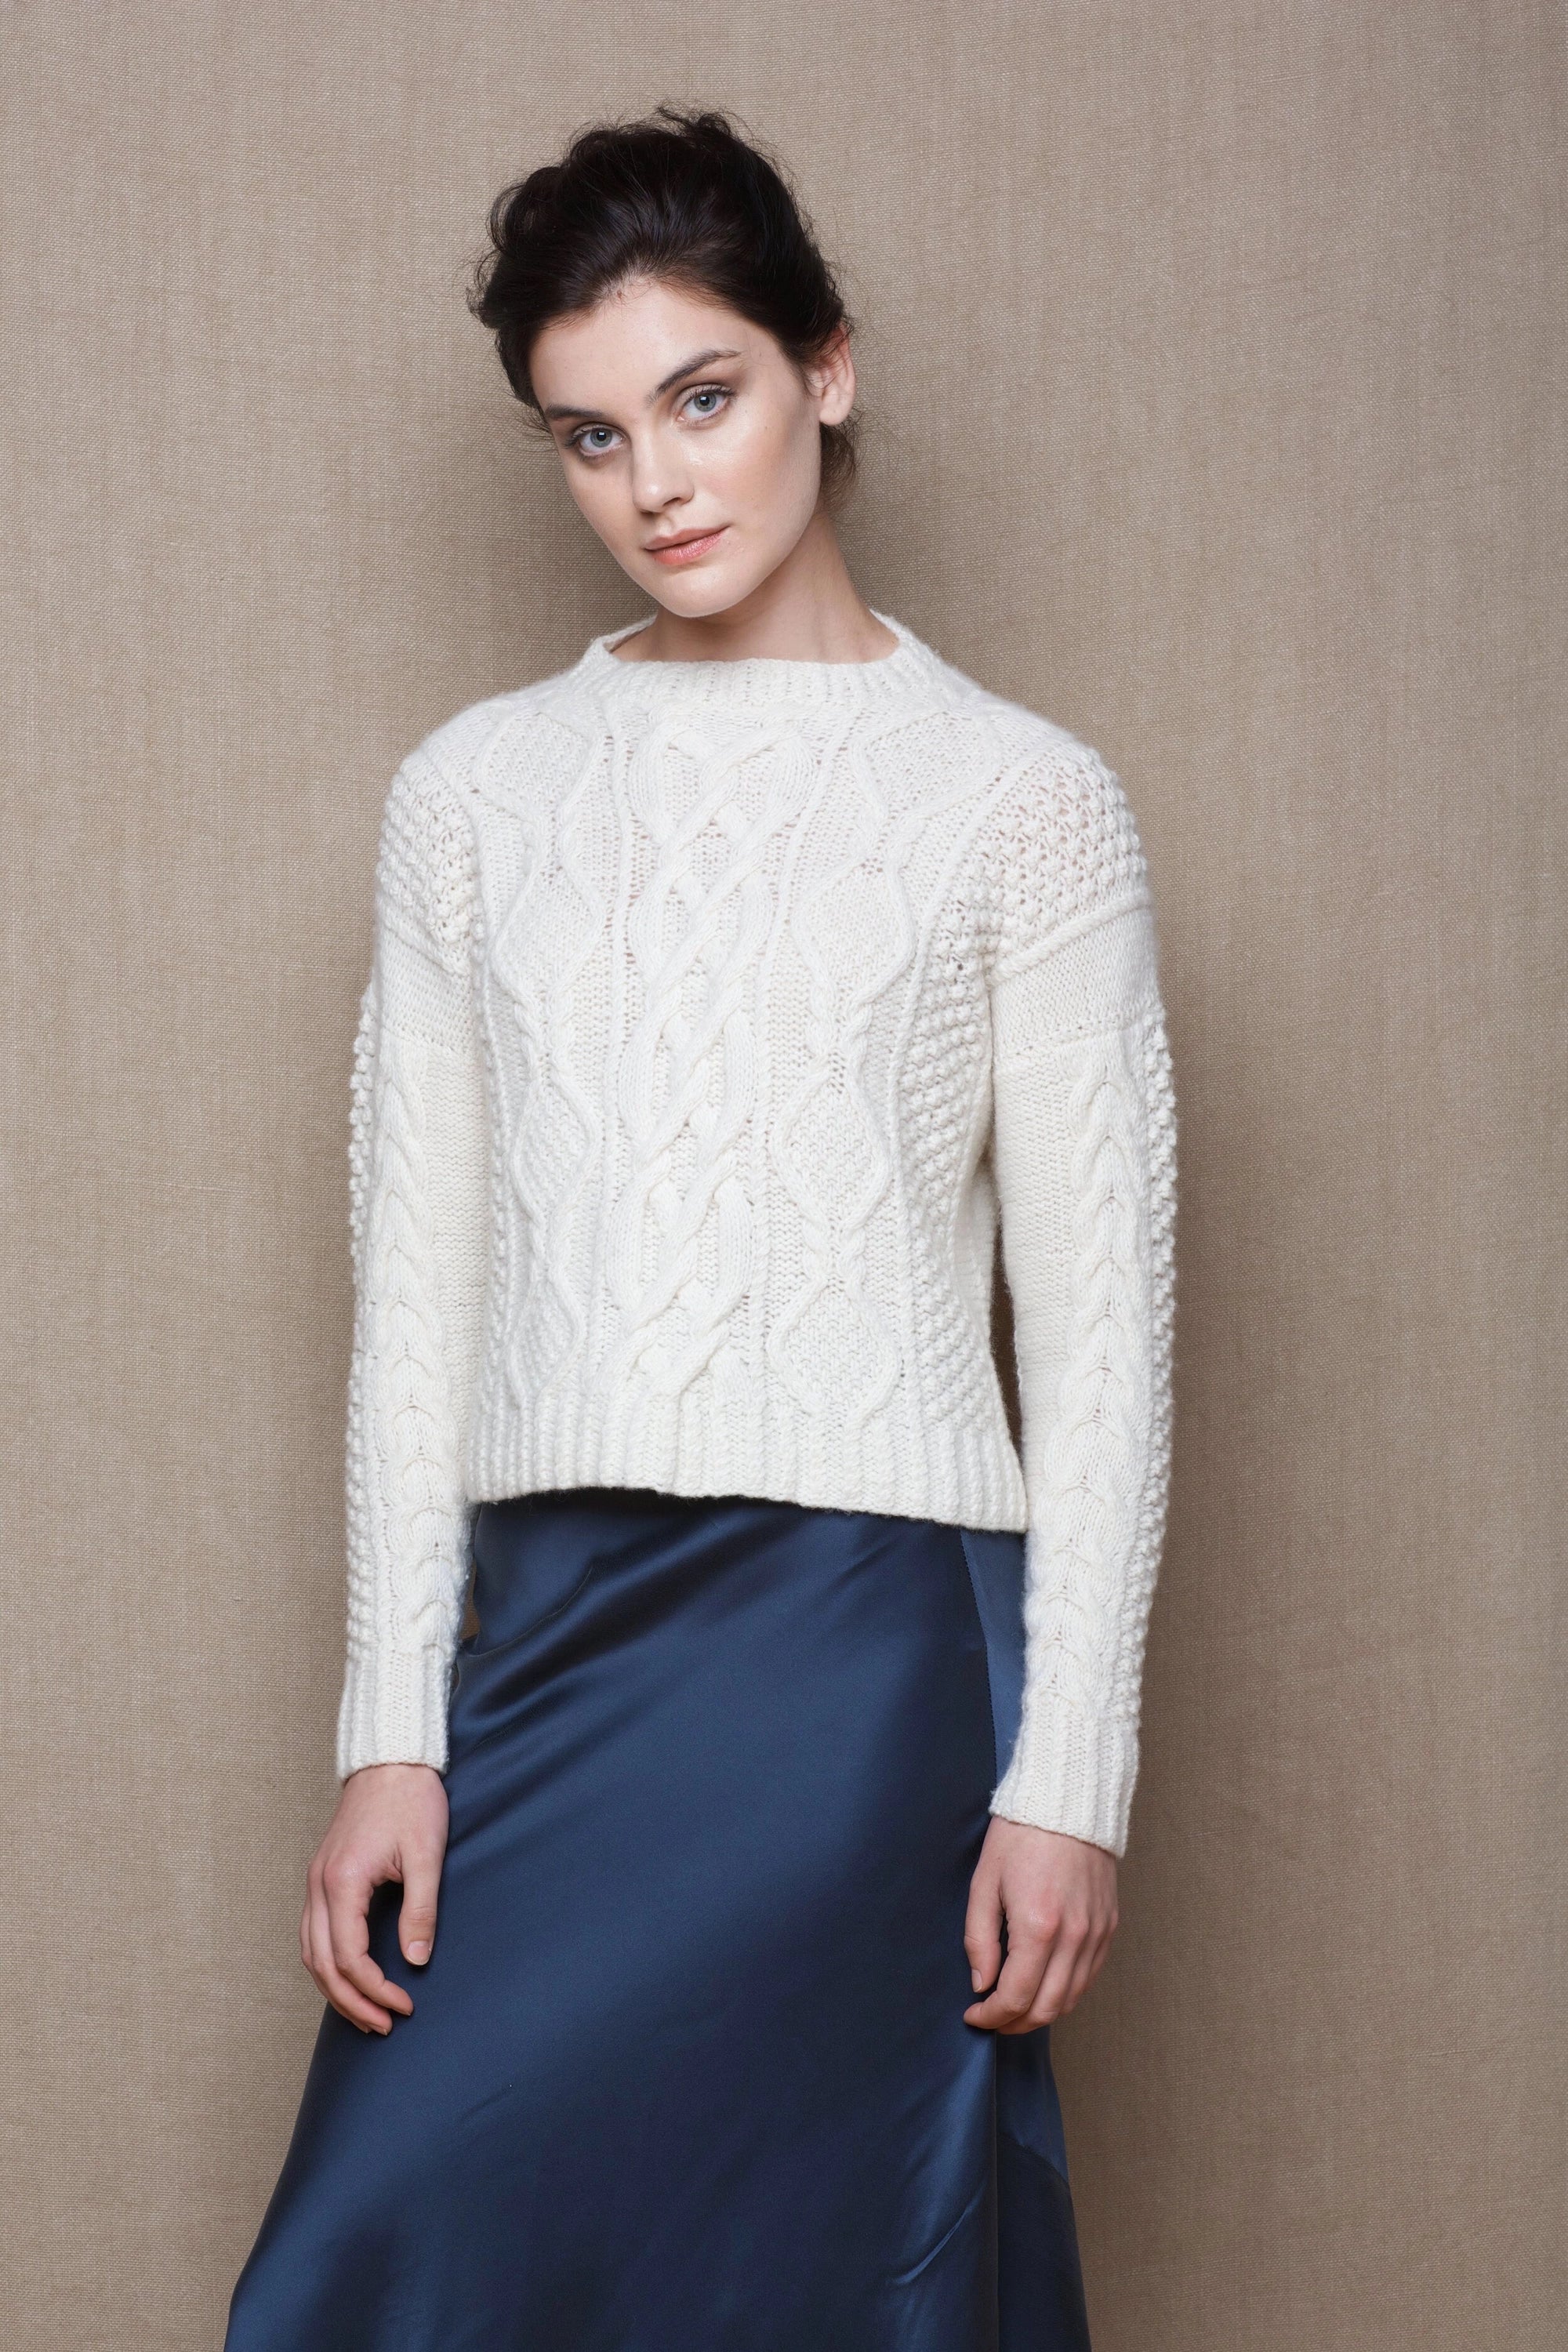 Handknit luxury bespoke aran sweater